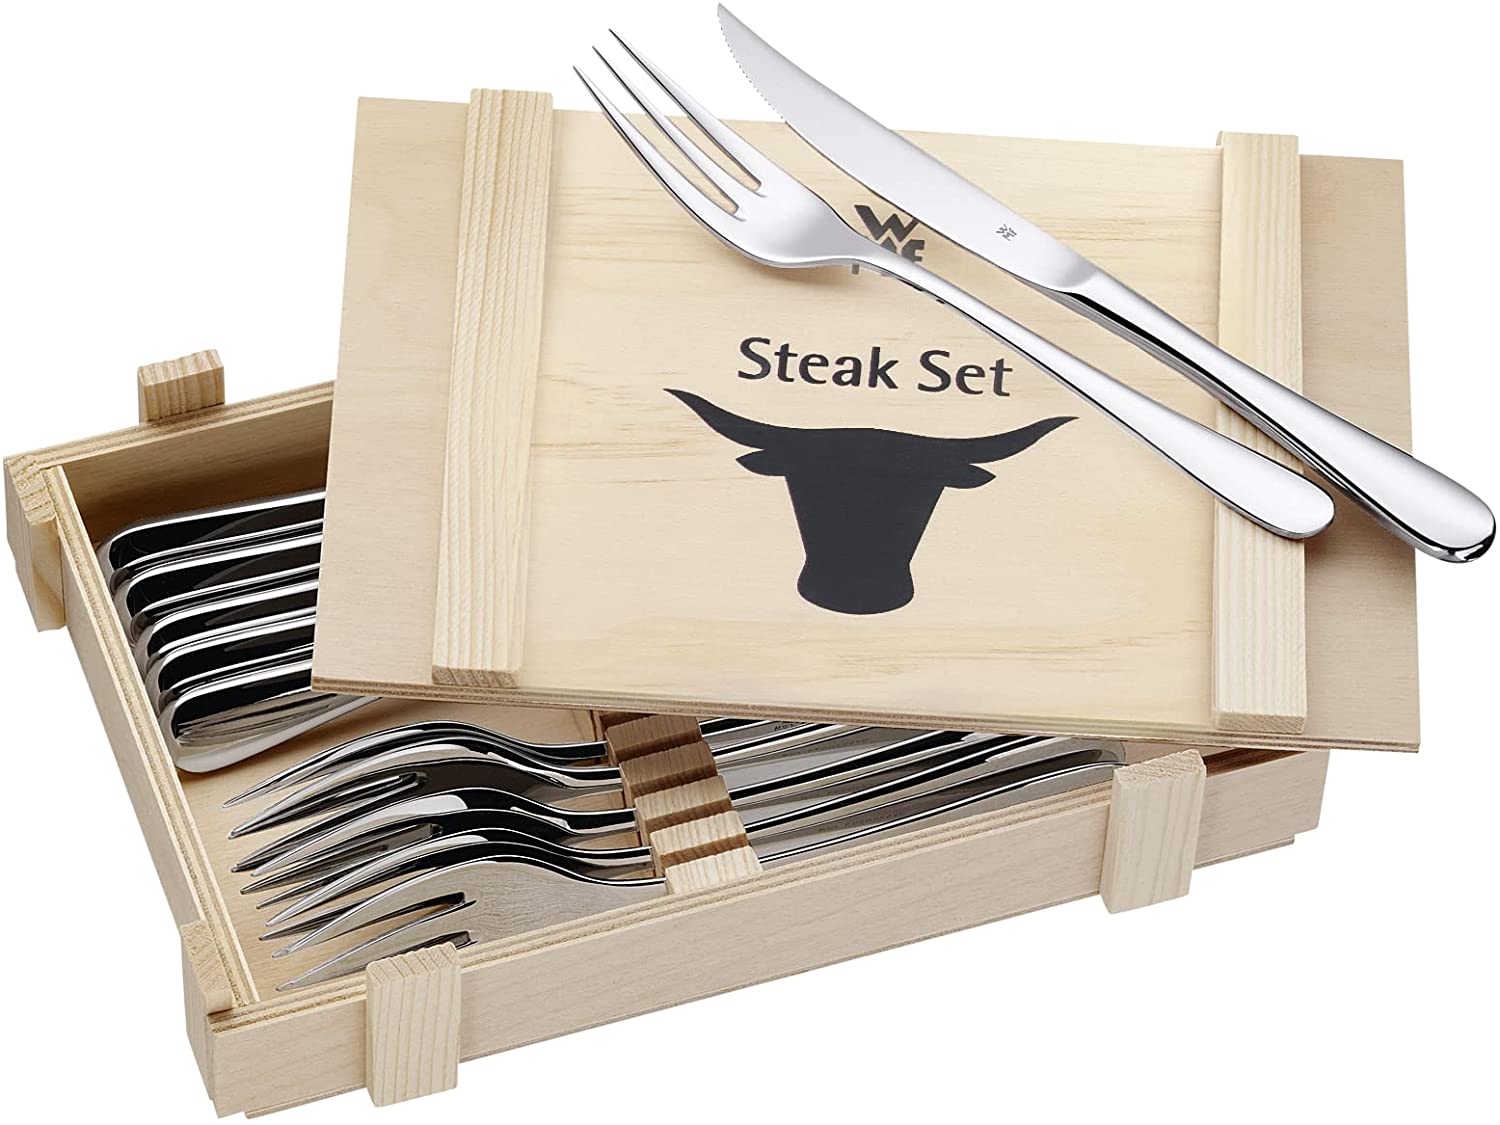 WMF steak cutlery 12 pieces, steak cutlery set for 6 people, steak knife, steak fork, polished Cromargan stainless steel, grill cutlery in wooden box